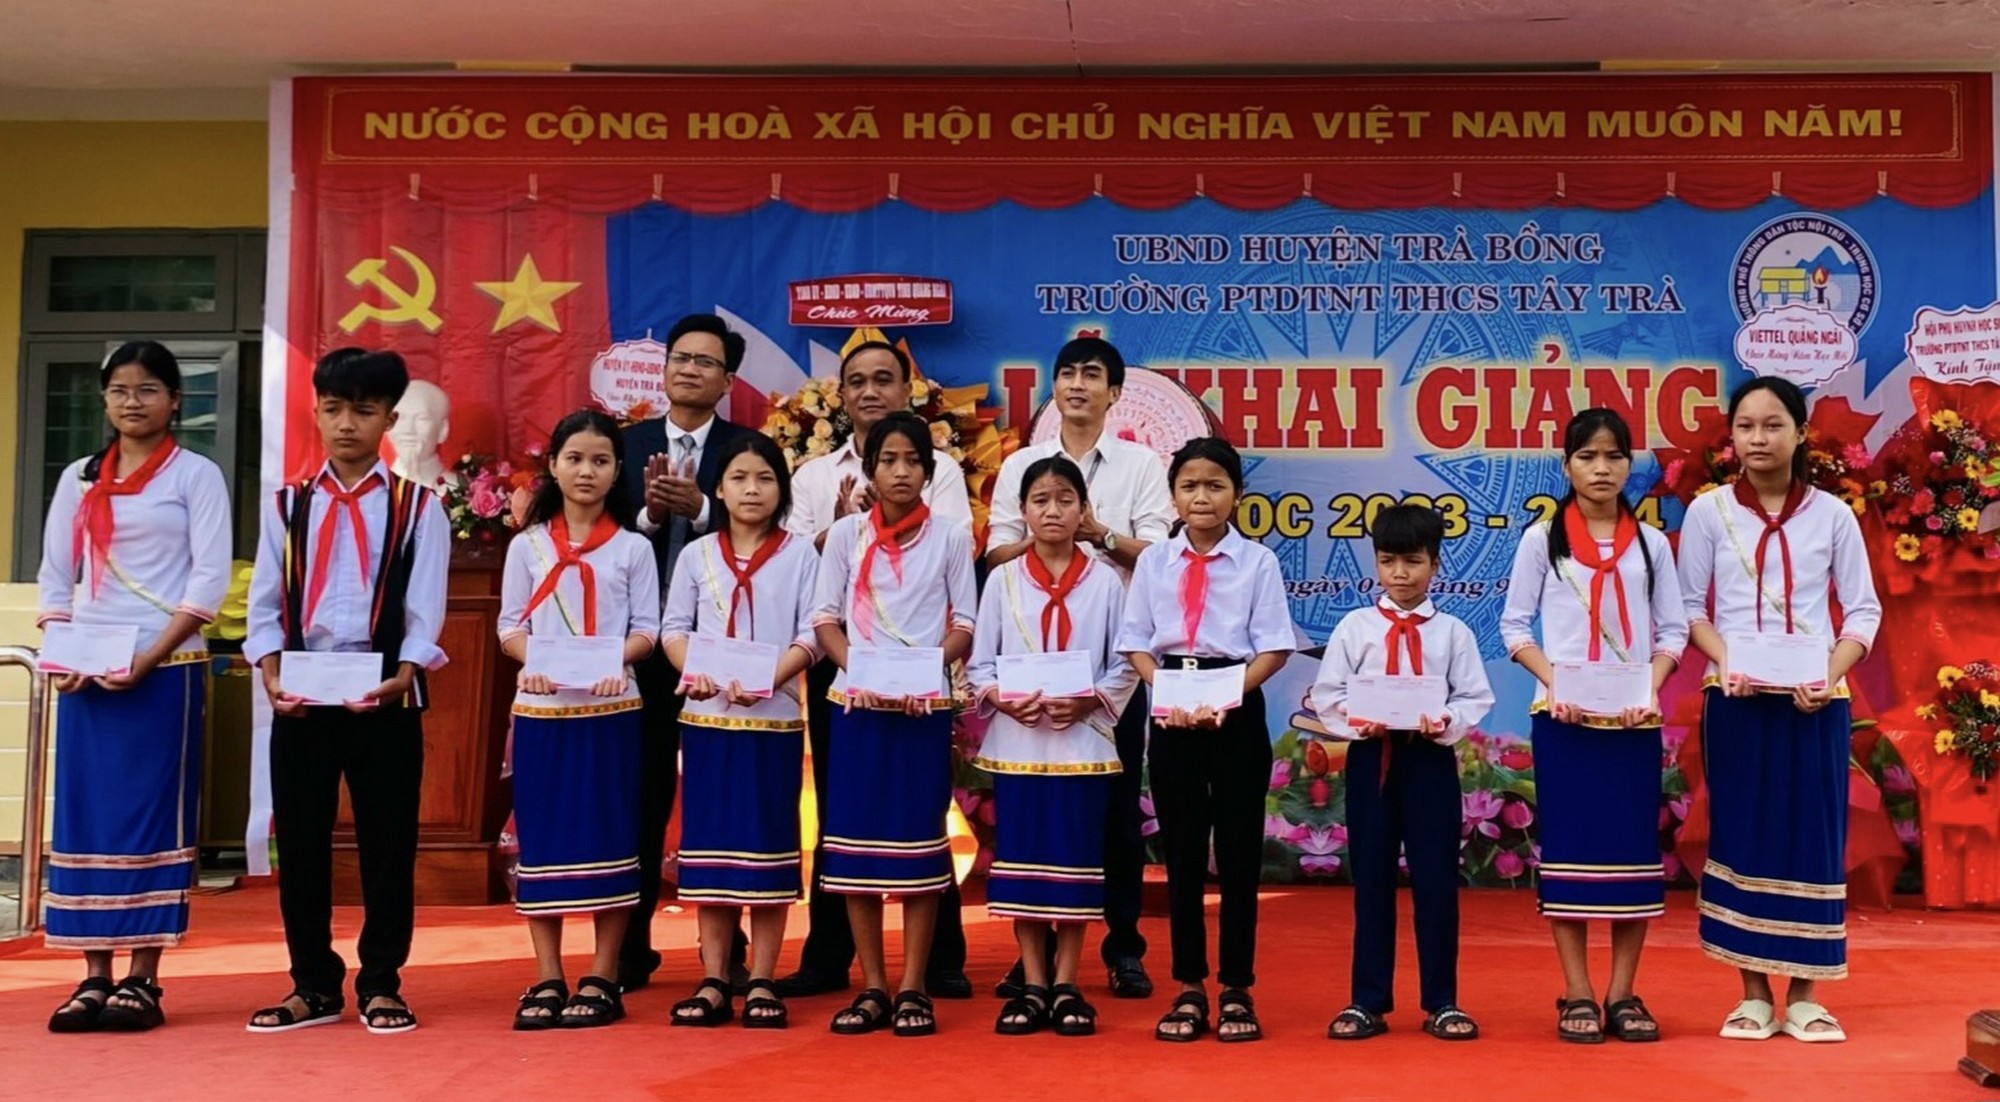 Trường PTDTNT THCS Tây Trà huyện Trà Bồng khai giảng năm học mới